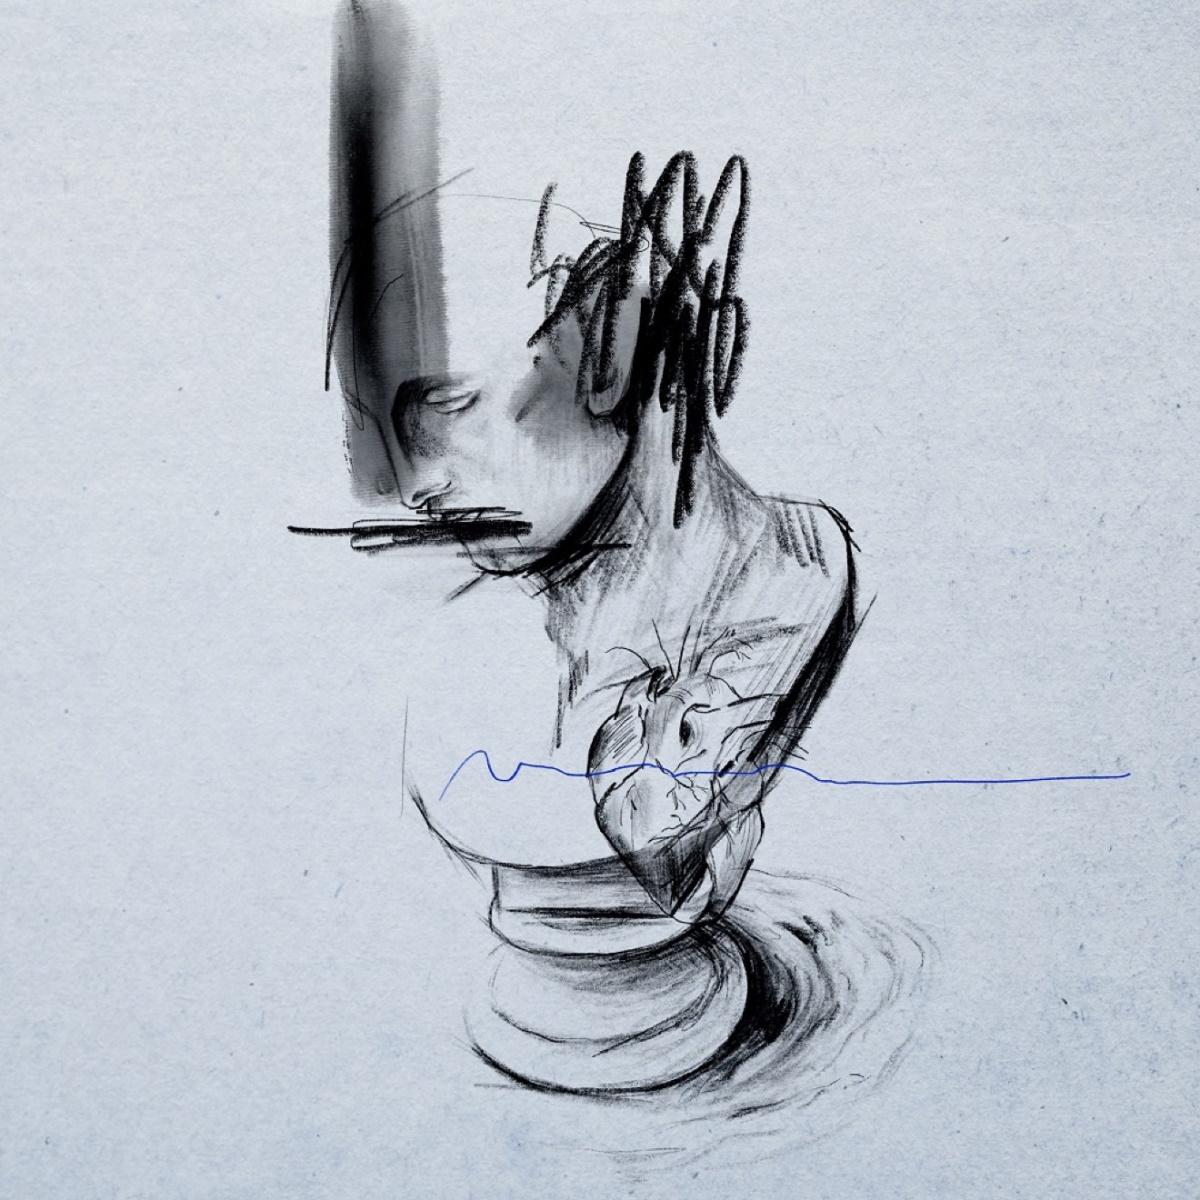 Cover art for『Tatsuya Kitani - Inner Whirlpool』from the release『Inner Whirlpool』